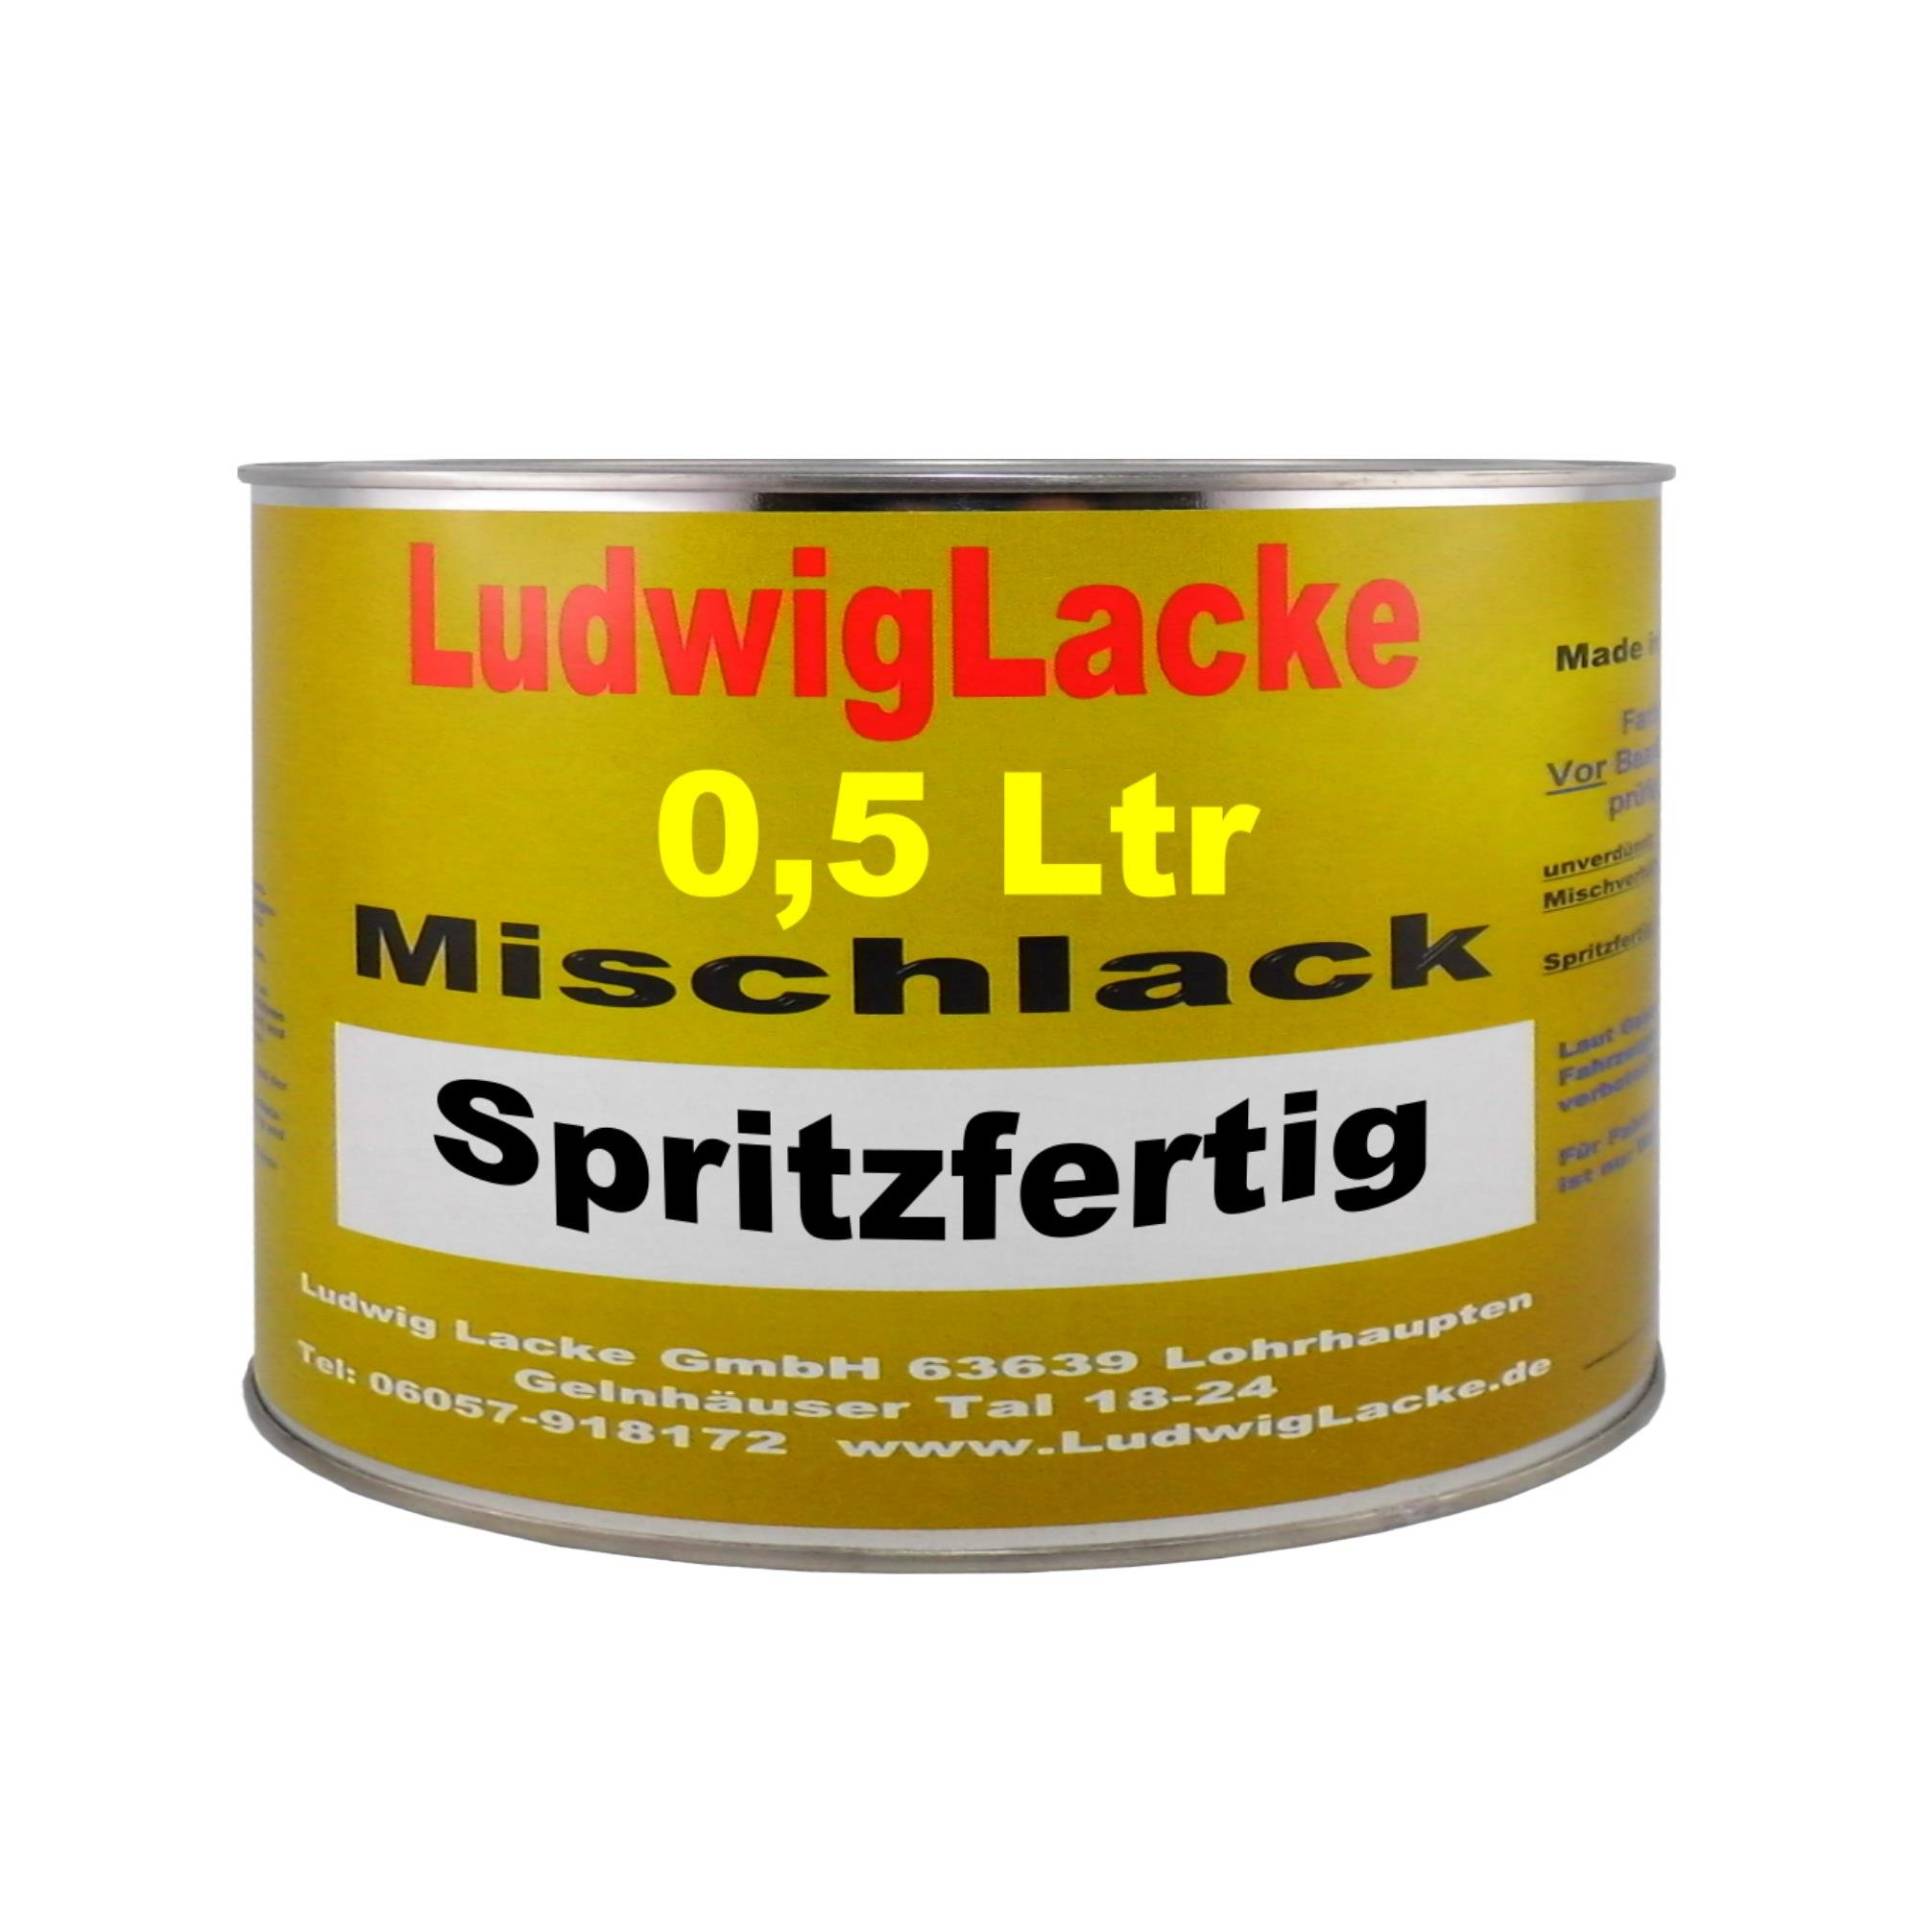 Ludwig Lacke 500ml spritzfertiger Autolack für Mercedes Brillantsilber Metallic 744M Bj.91-12 von Ludwiglacke